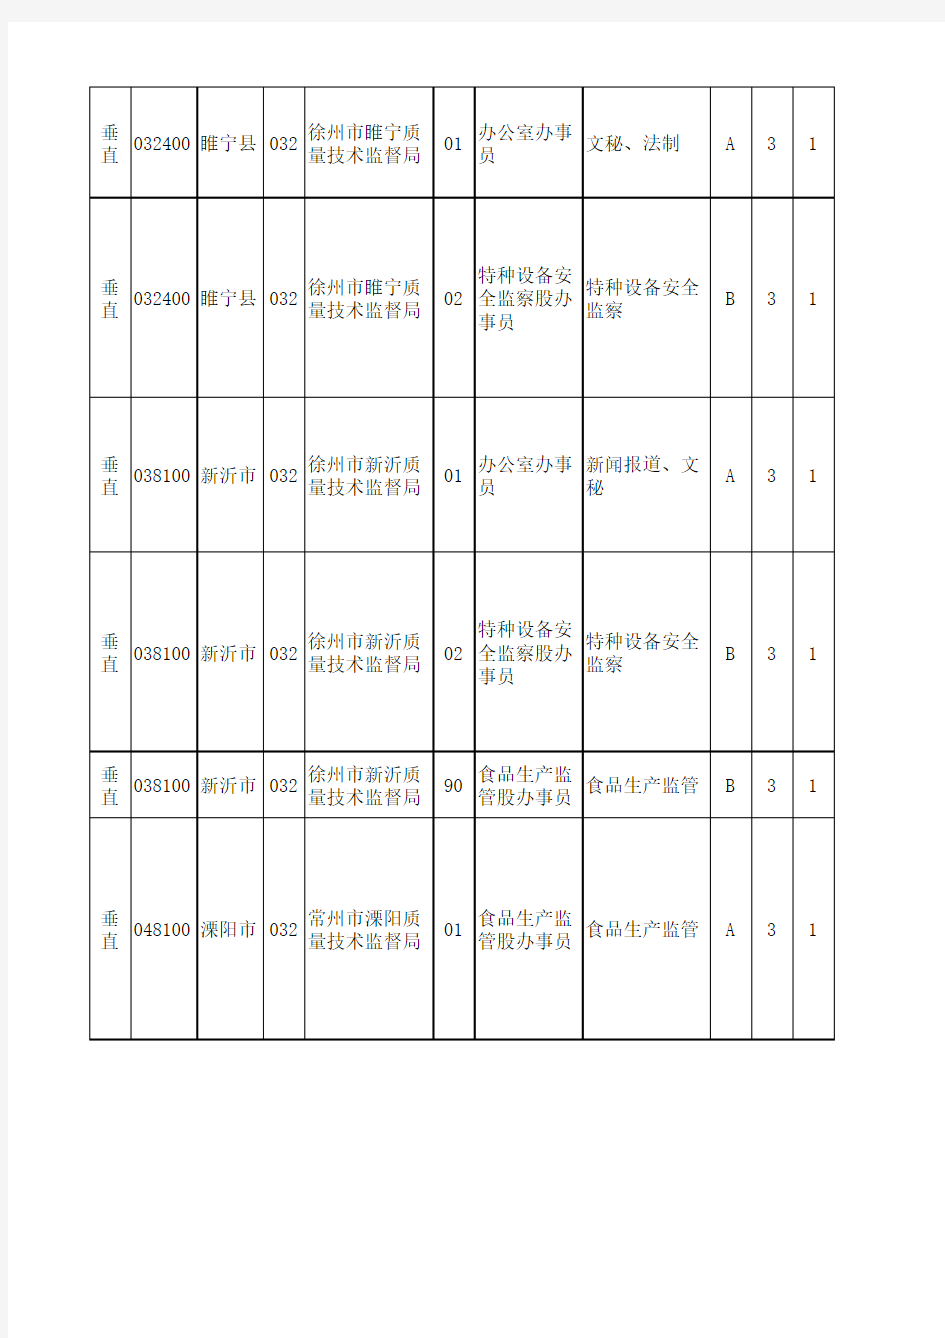 2013年江苏省公务员考试职位表——查询系统